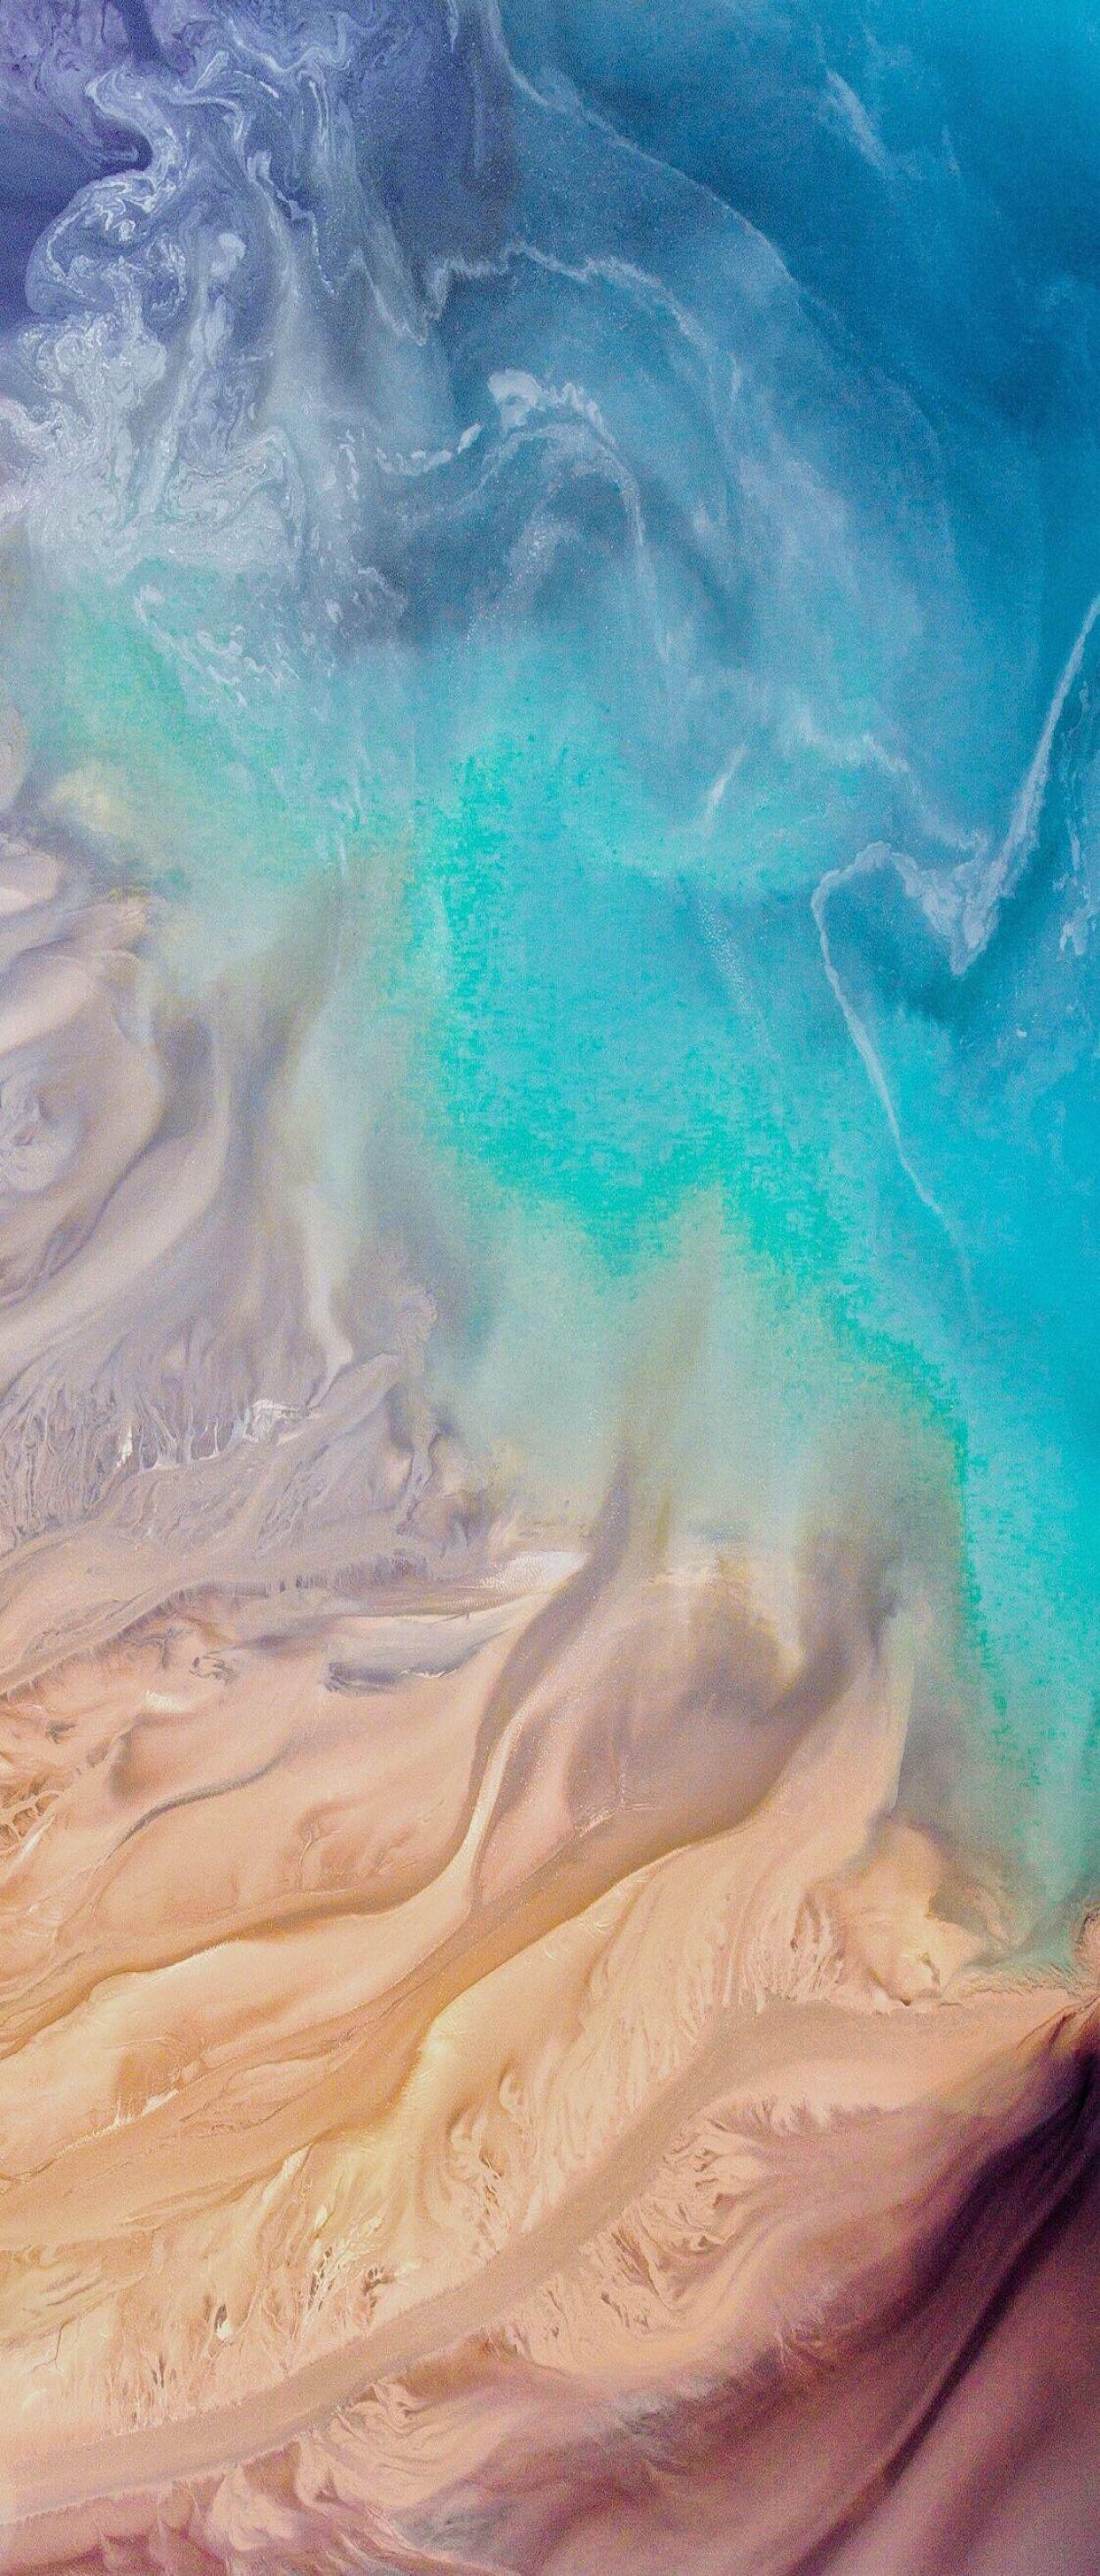 iOS iPhone X, Aqua, blue, Water, beach, wave, ocean, apple